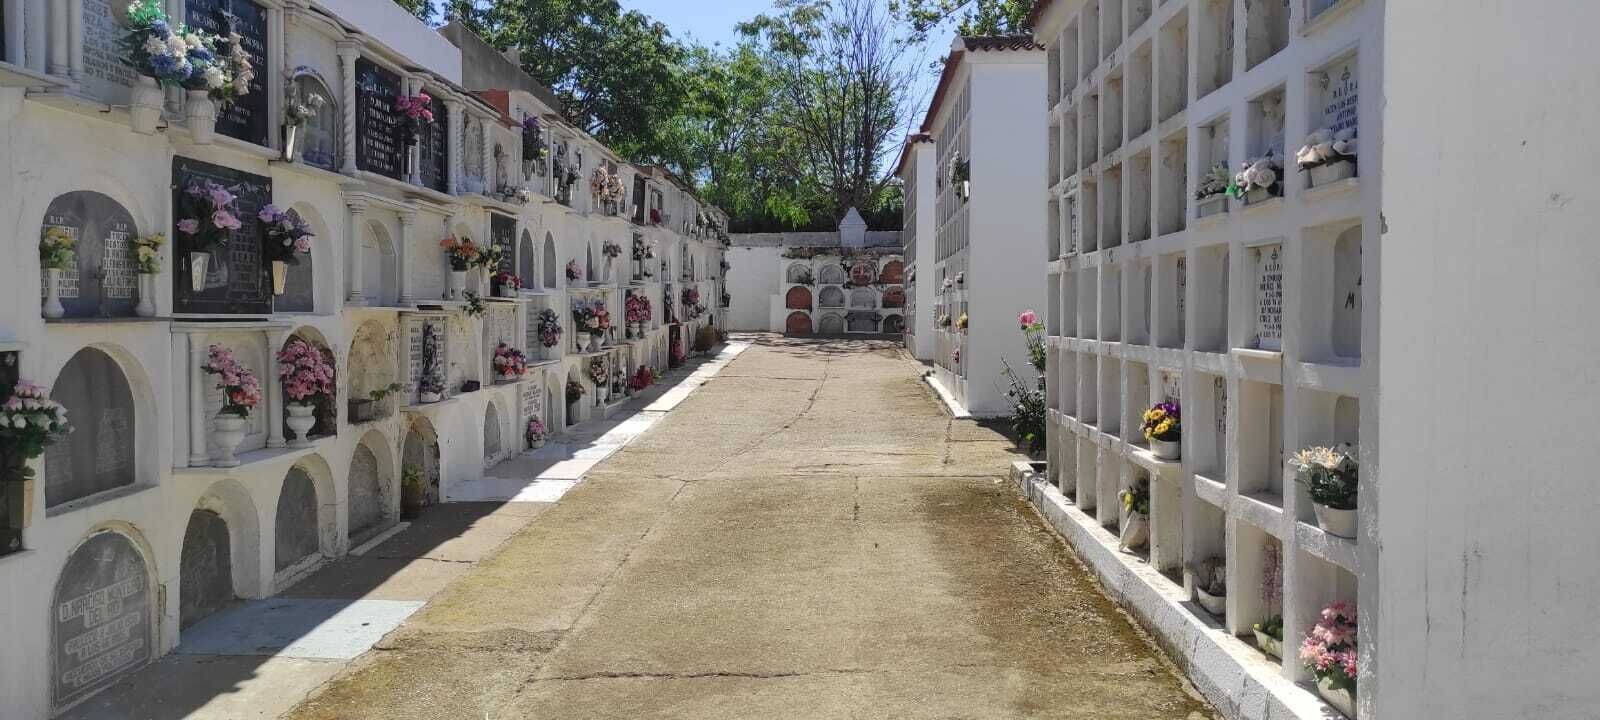 cementerio7